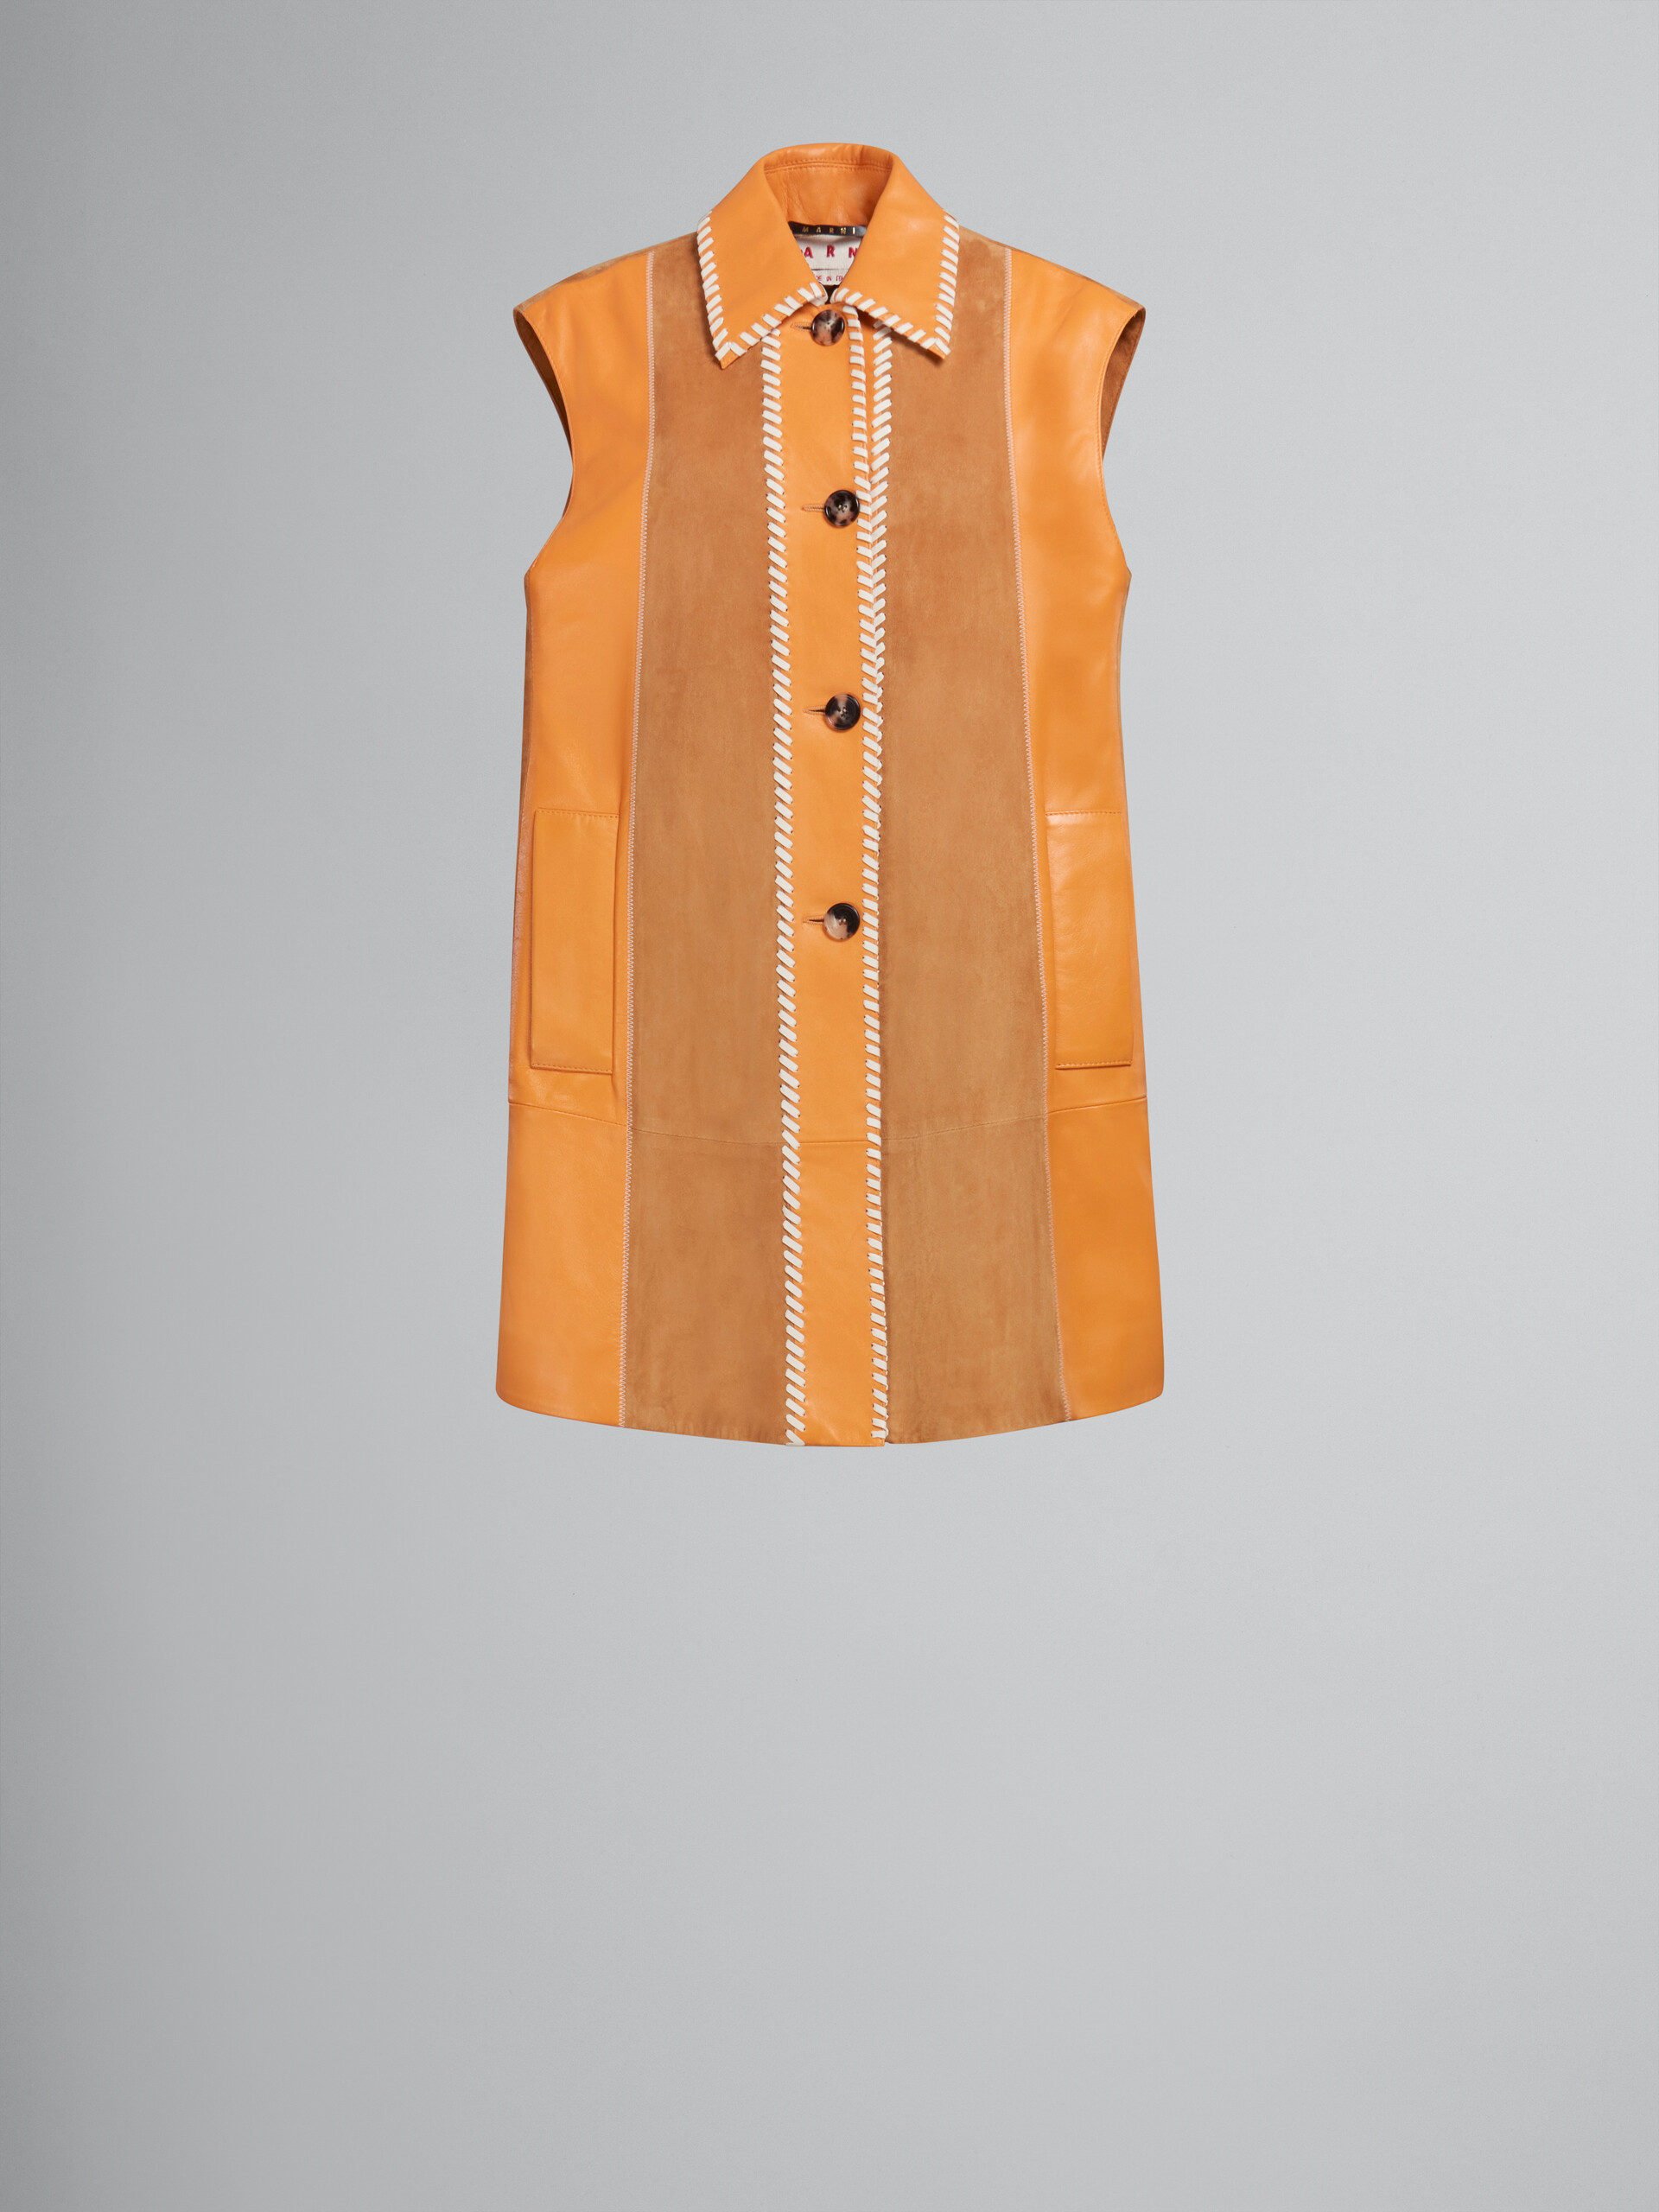 Vestito patchwork in suede e nappa arancione - Gilet - Image 1